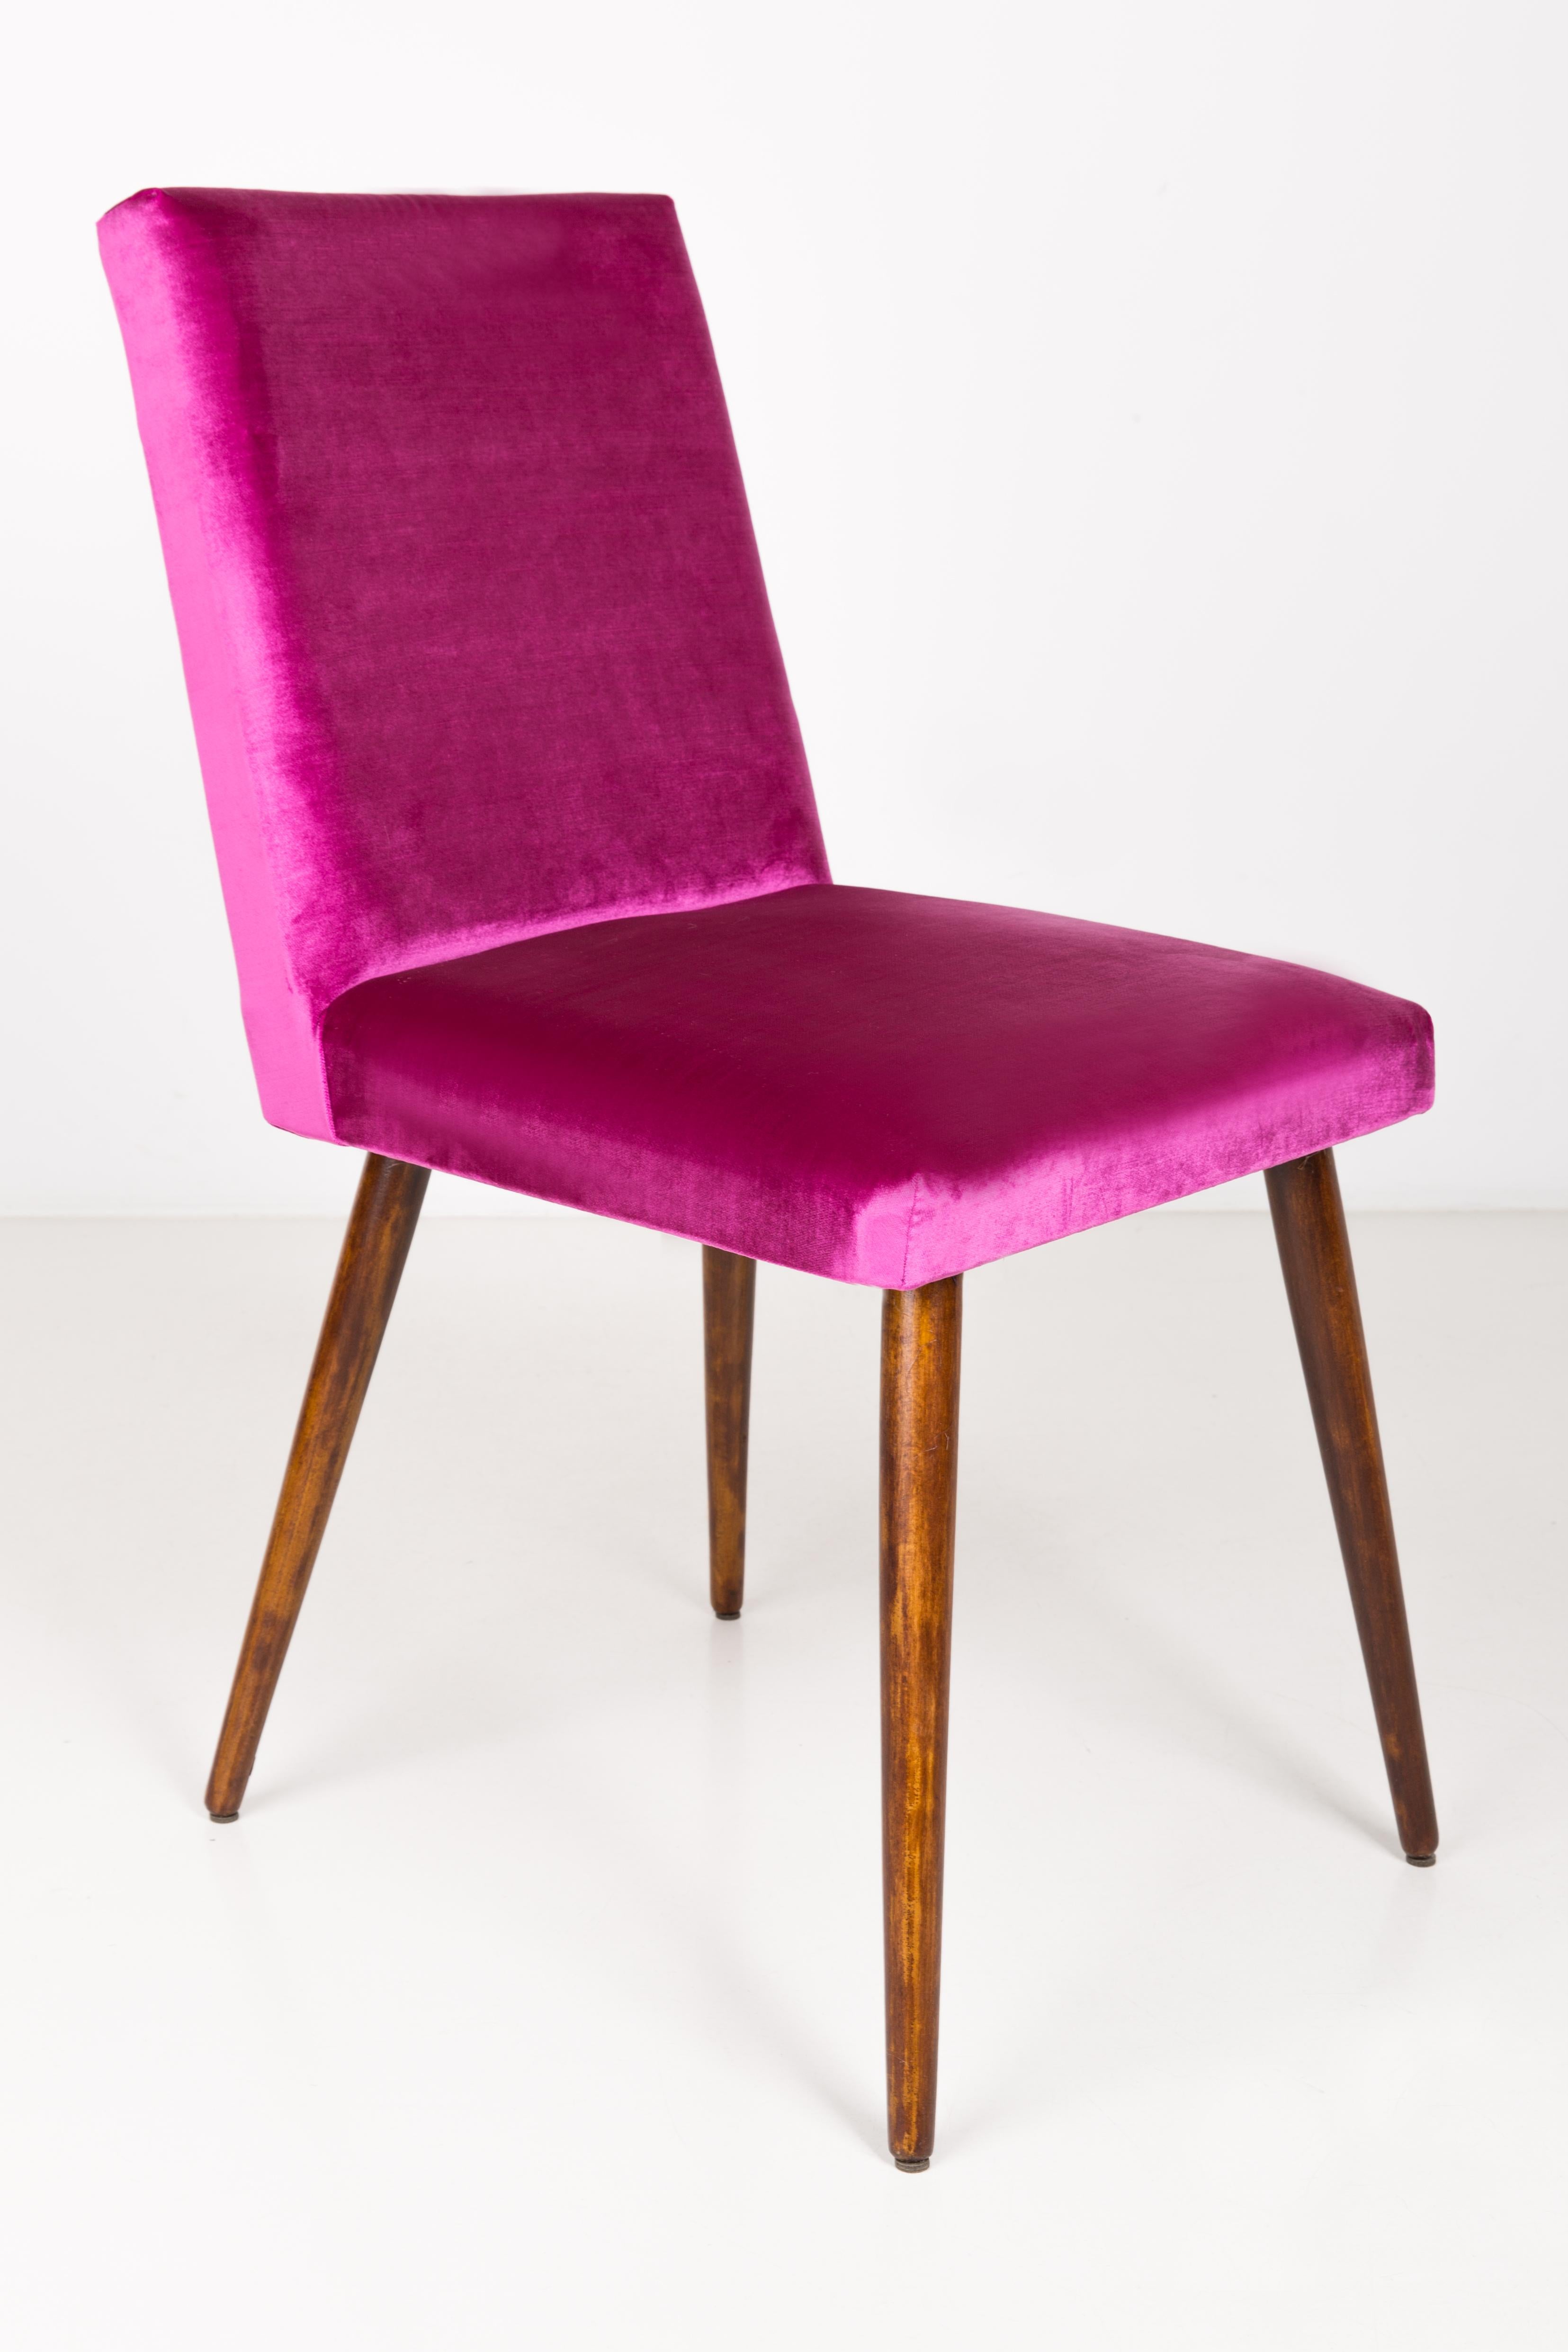 Une belle chaise produite dans les années 1960 en Pologne. Ils sont après un rembourrage complet et un rafraîchissement de la menuiserie, confortables et stables. L'ensemble est recouvert d'un tissu durable et de haute qualité. Nous pouvons